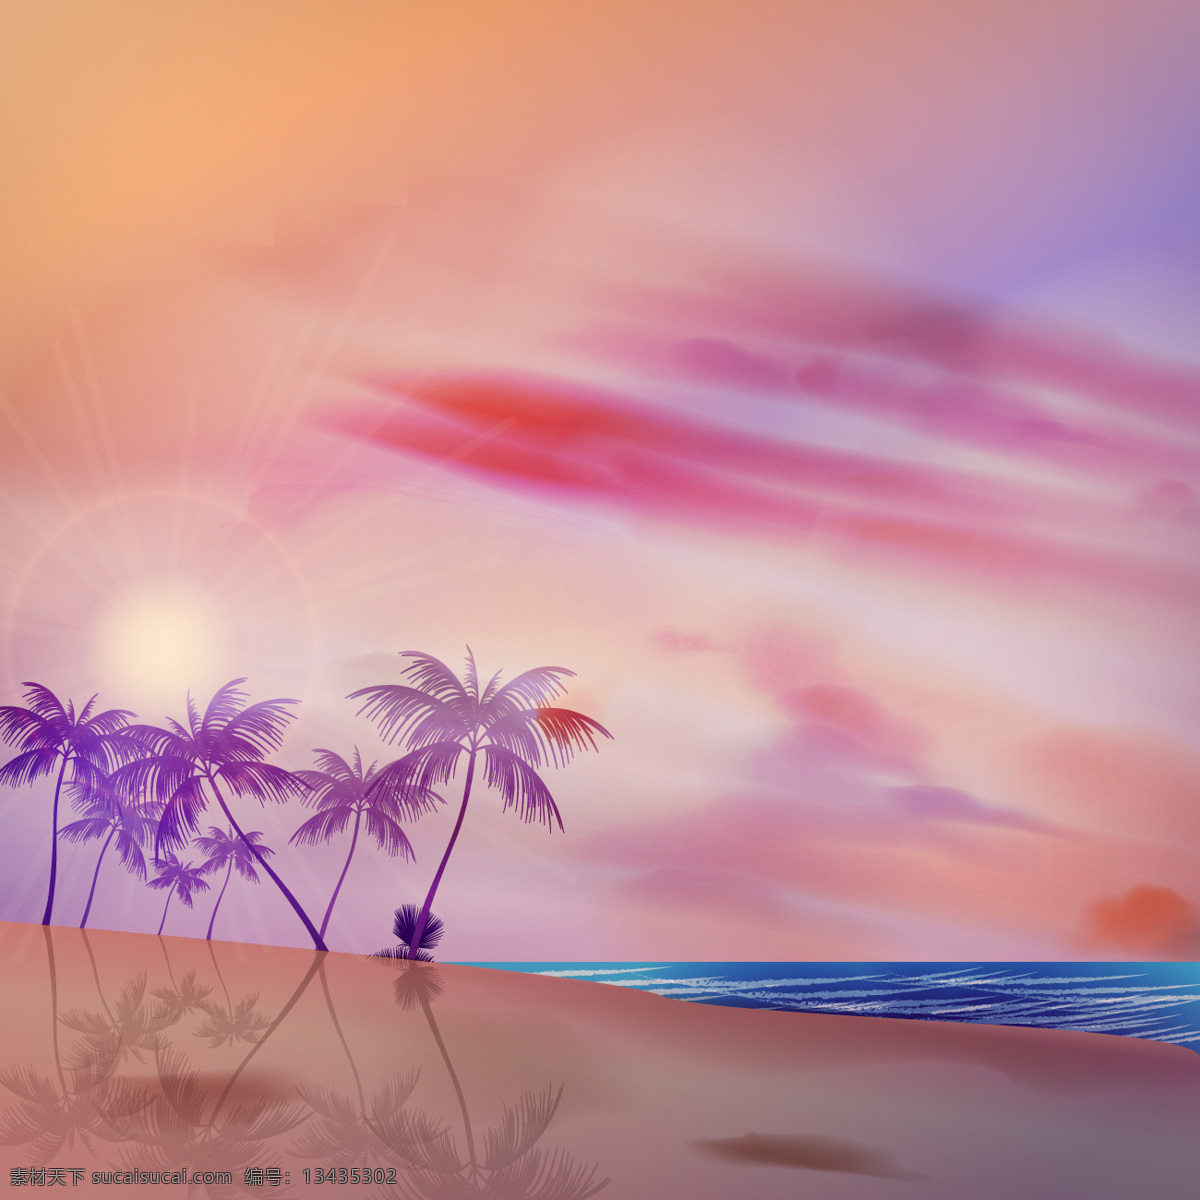 热带 背景 紫色 手掌 抽象的 夏天 海滩 颜色 热带棕榈 夕阳的背景下 夏日海滩 紫罗兰 抽象 日落 粉色